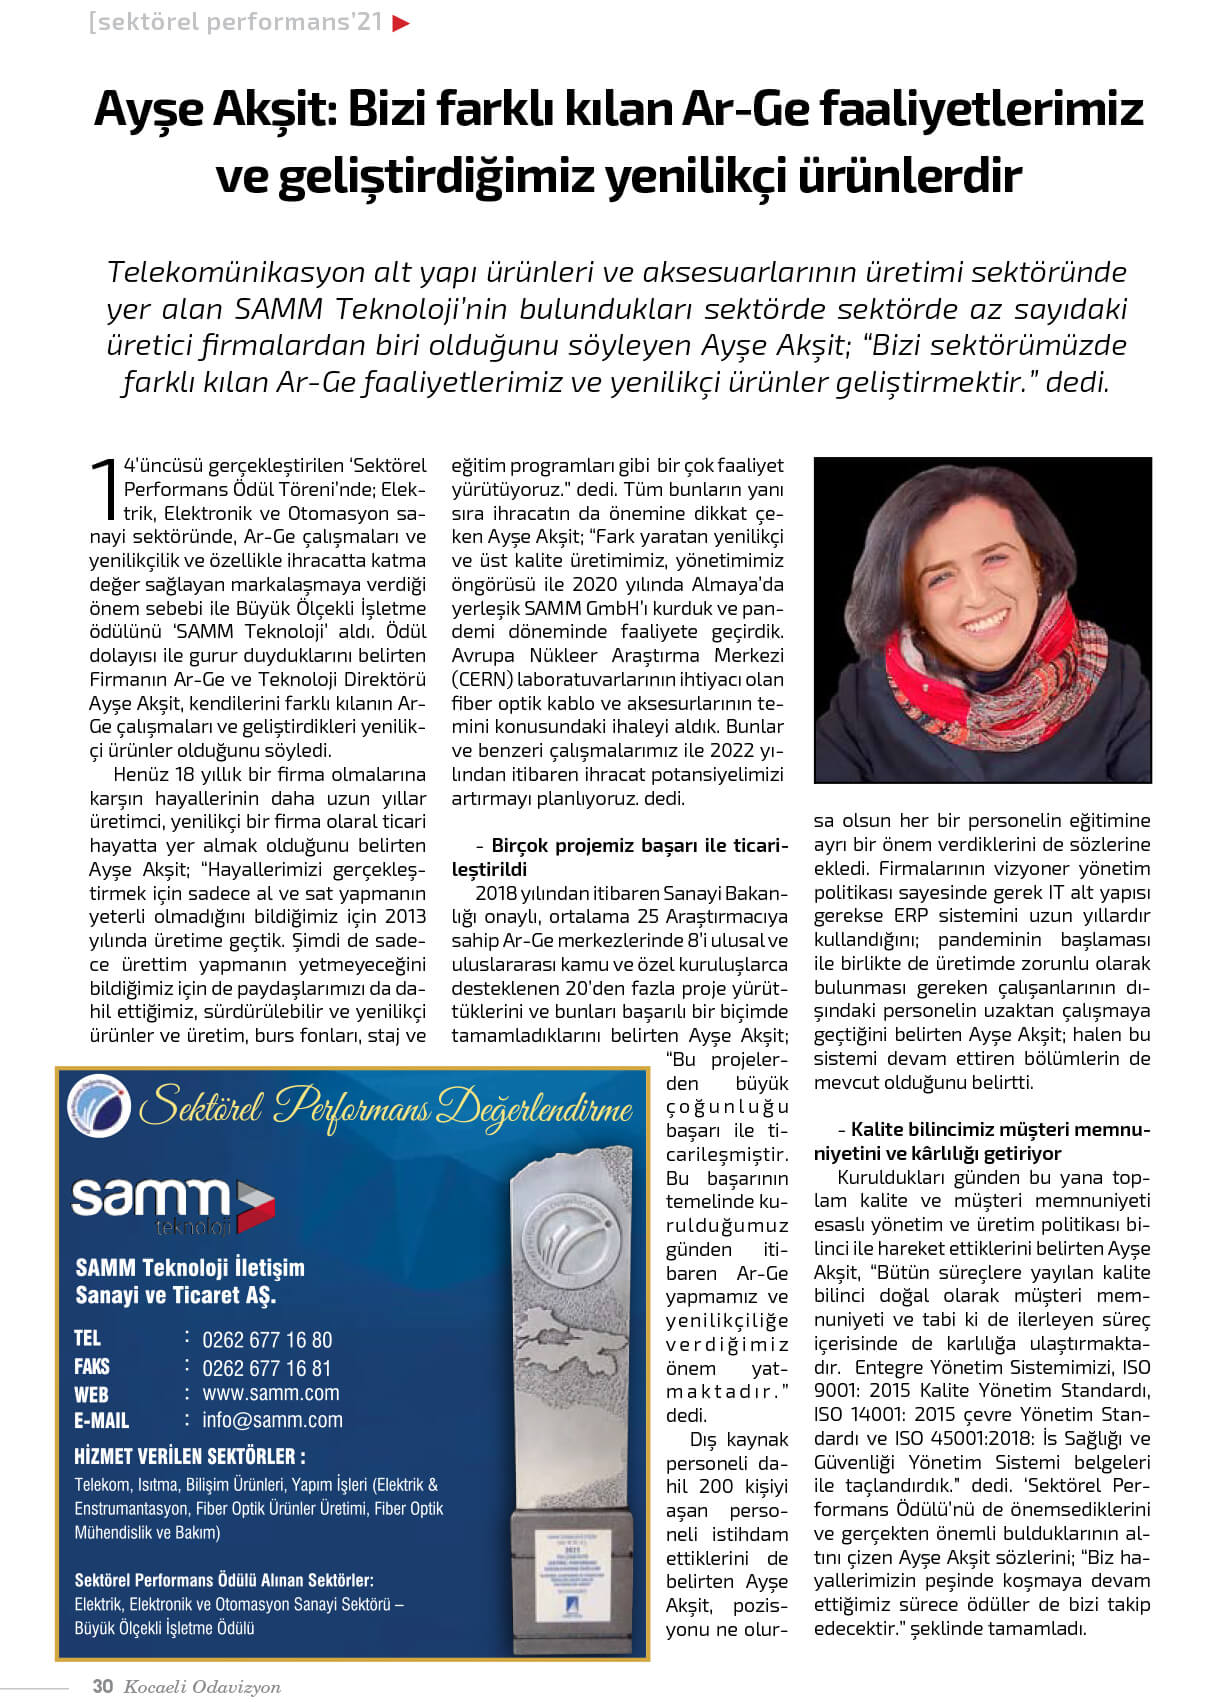 Ayşe Akşit, Interviewed by KSO Odavizyon Magazine!